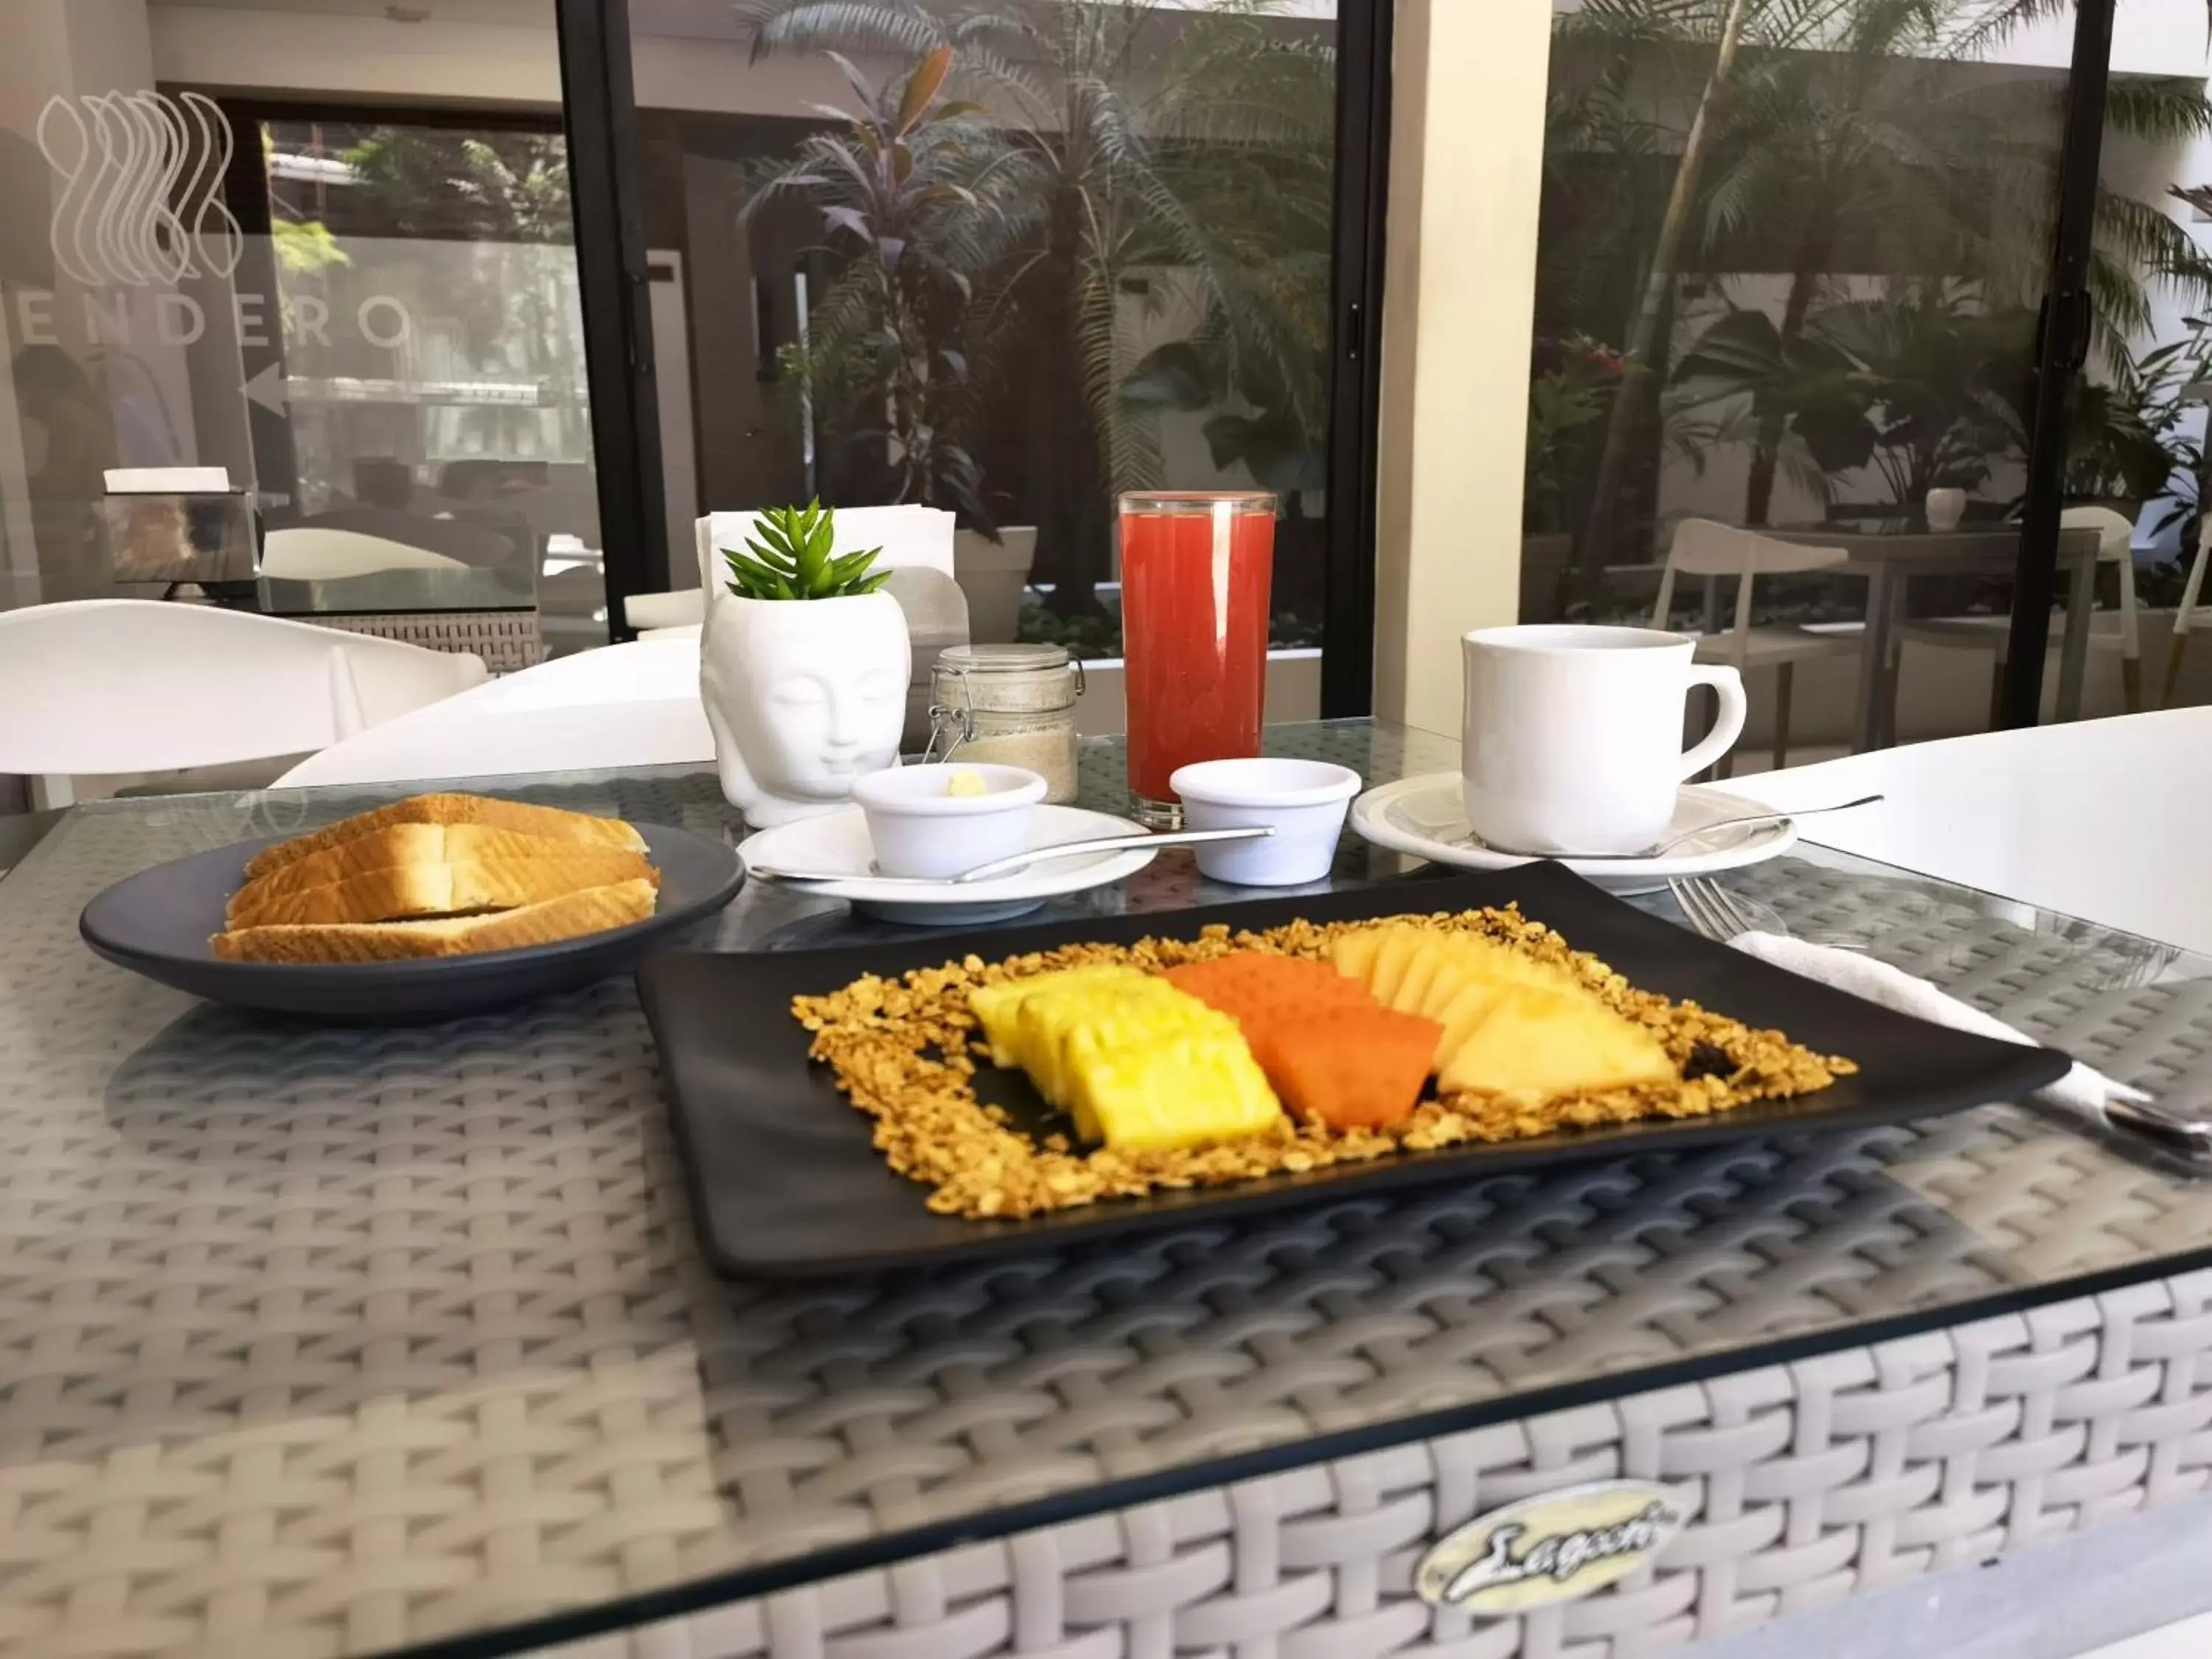 Breakfast in Hotel Zendero Tulum